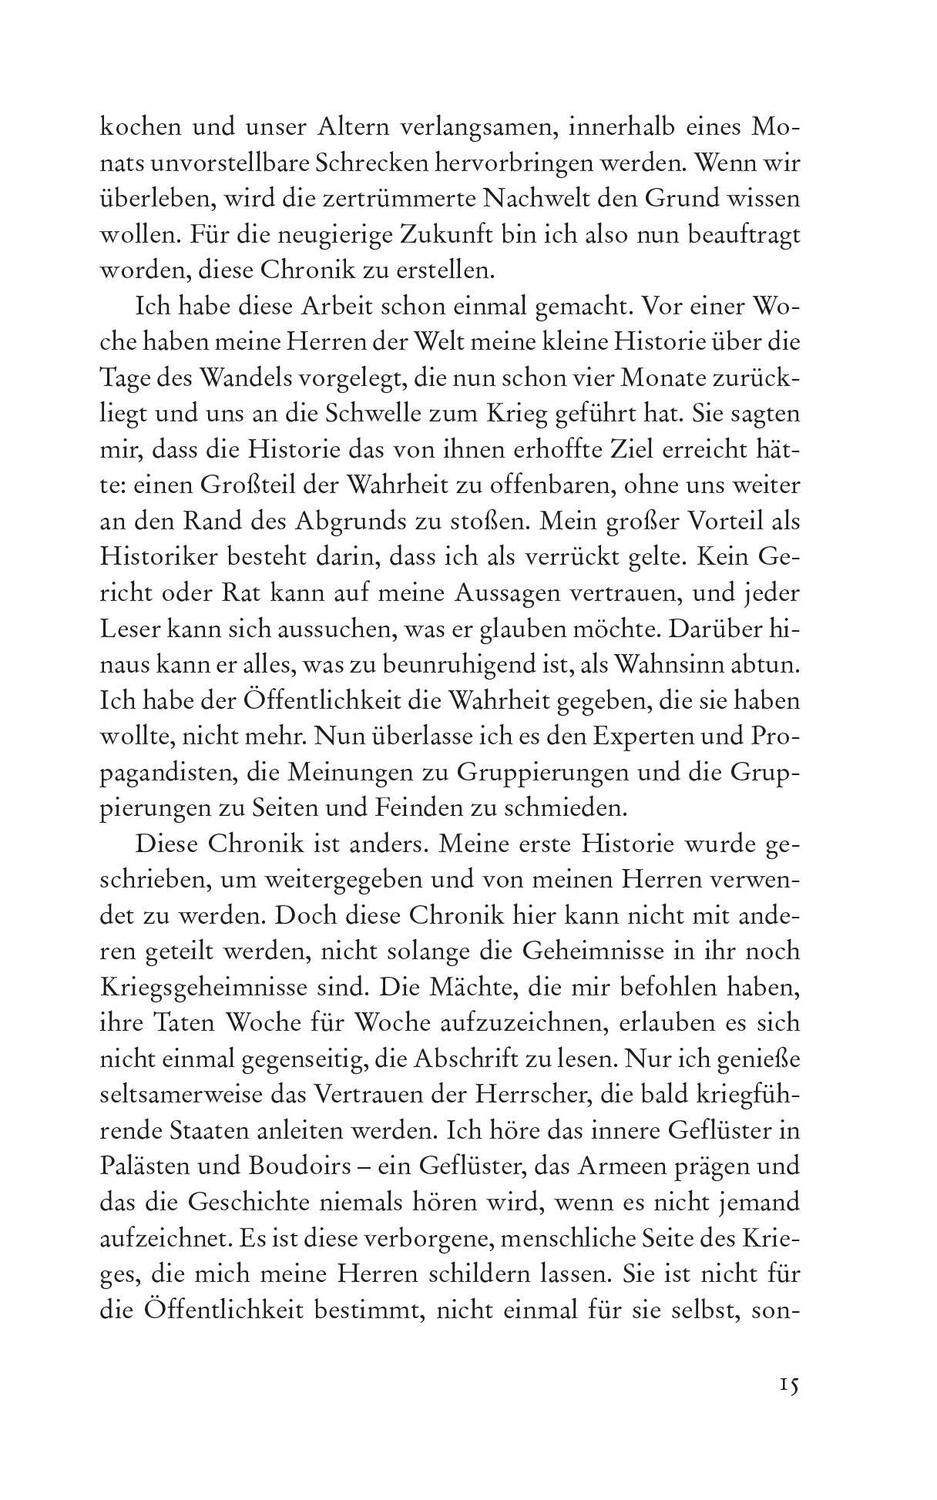 Bild: 9783833242762 | Der Wille zum Kampf | Ada Palmer | Taschenbuch | 560 S. | Deutsch